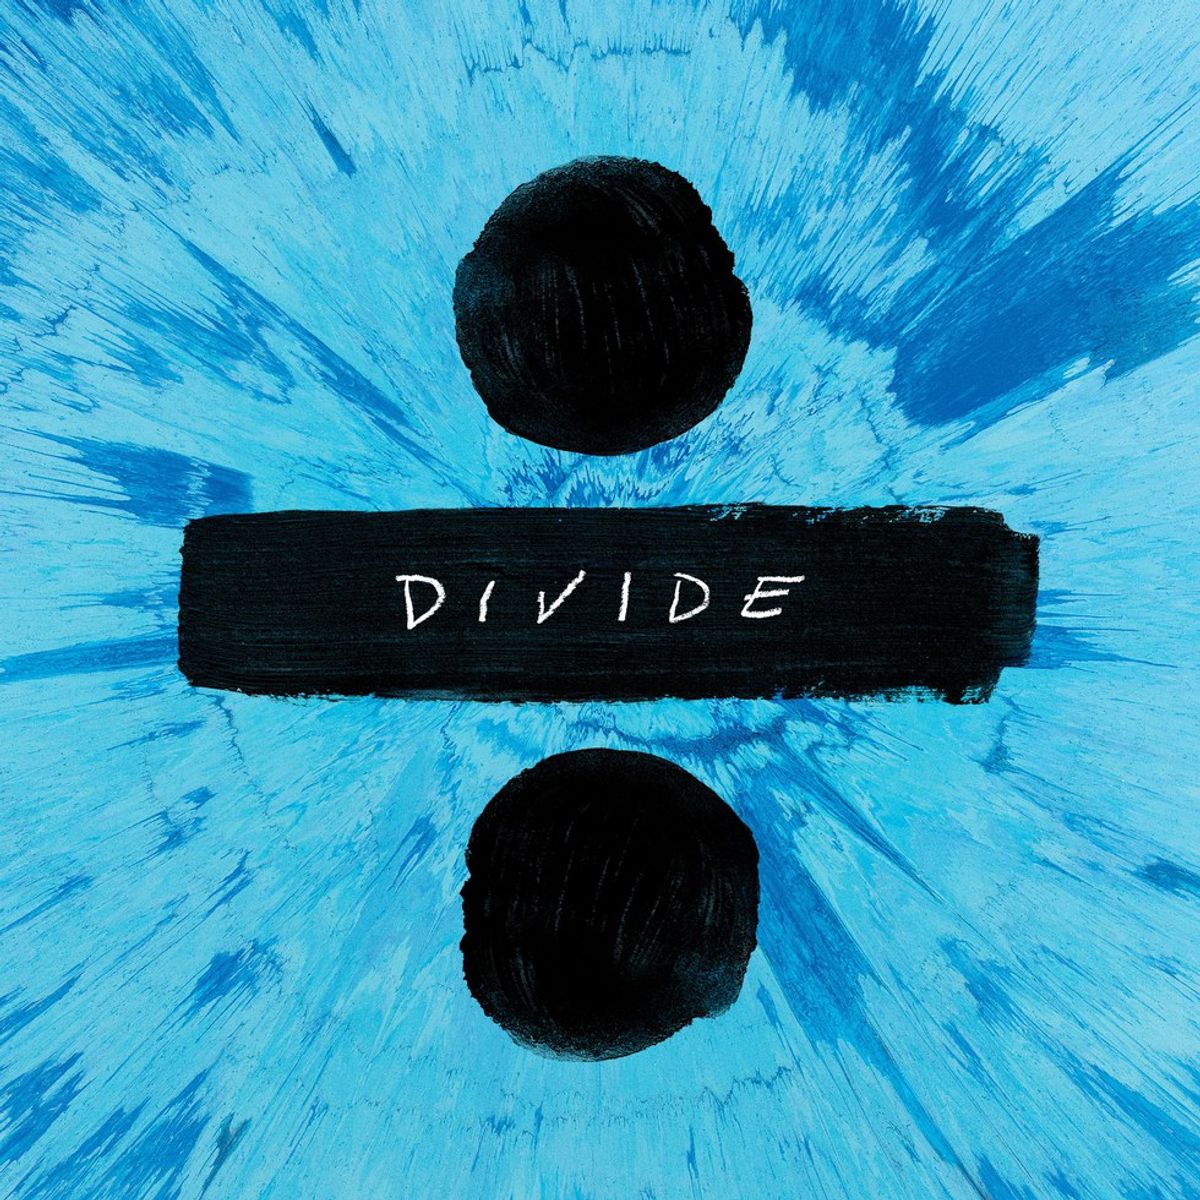 Divide: Ed Sheeran Album Review